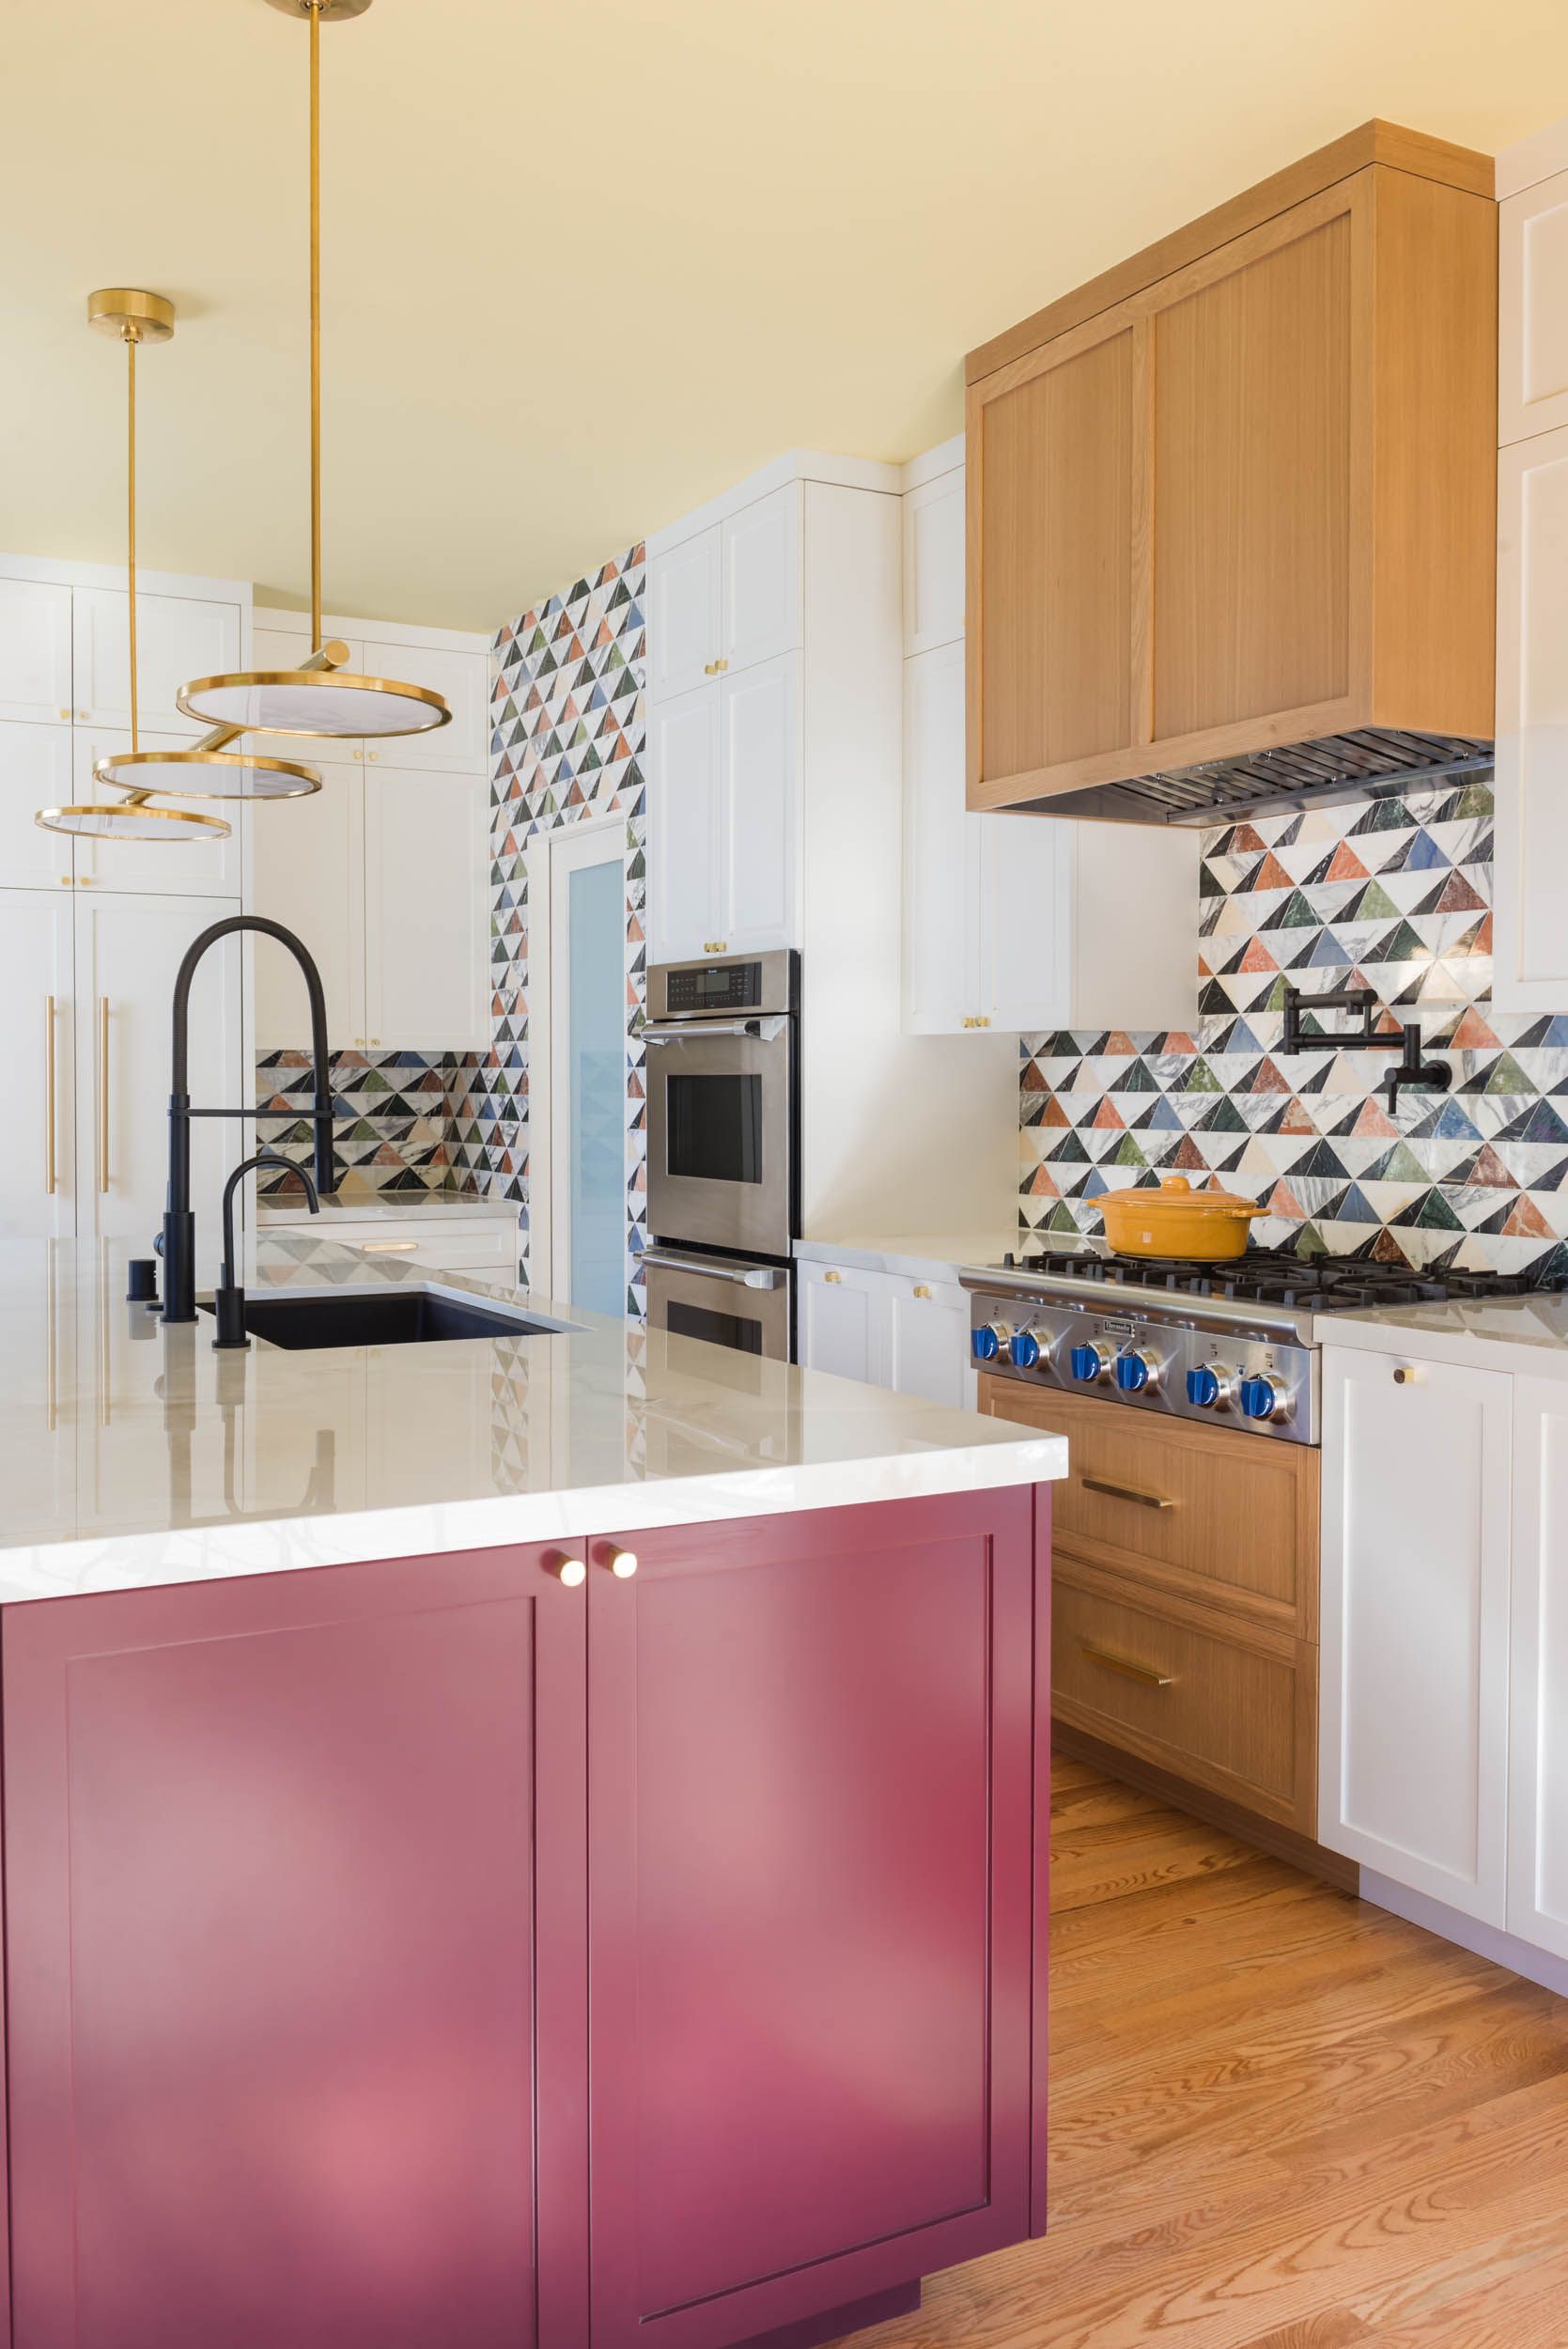 65 Best Kitchen Backsplash Ideas - Tile Designs for Kitchen Backsplashes